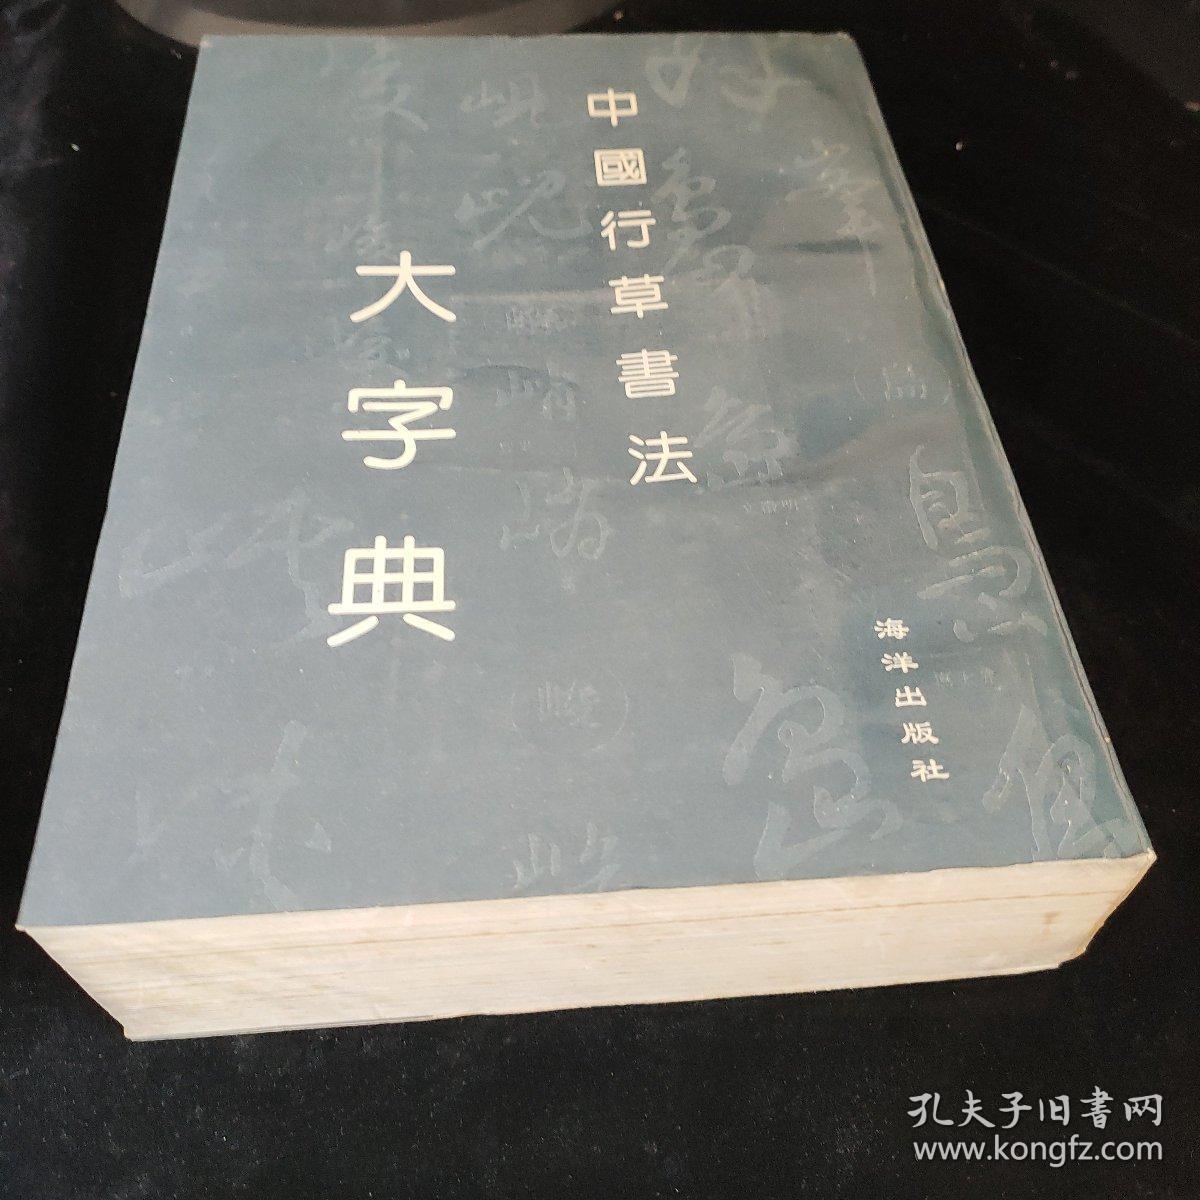 中国行草书法大字典